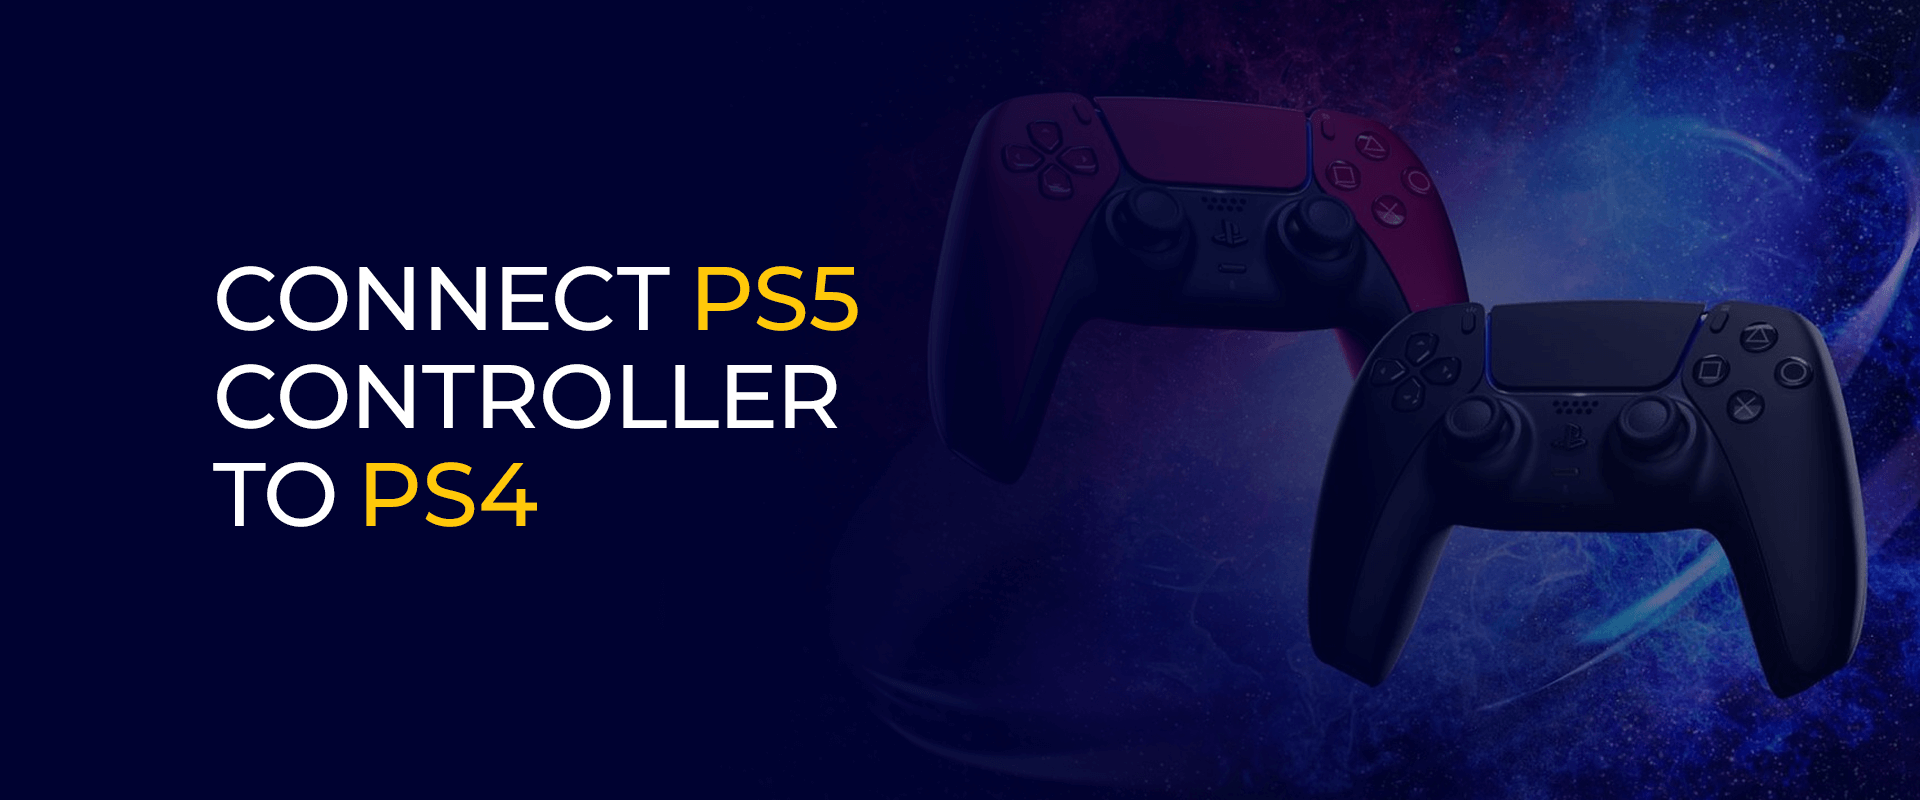 Sluit de PS5-controller aan op PS4